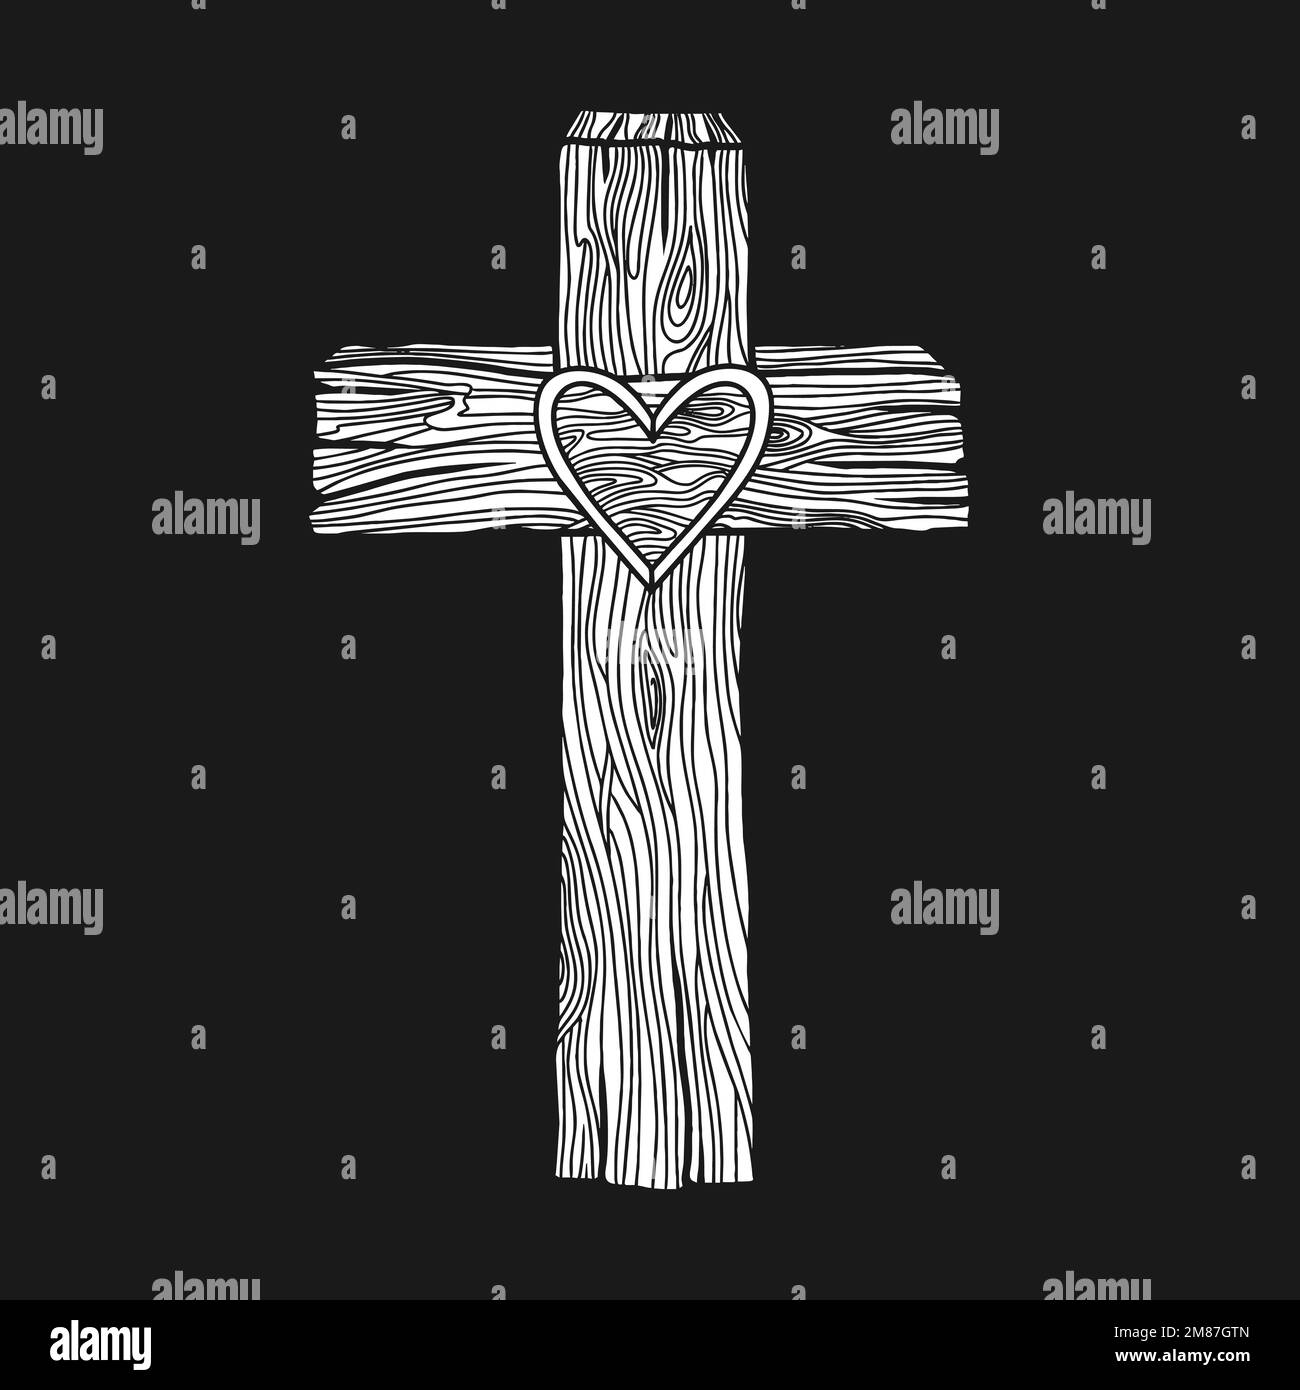 Illustrazione vettoriale disegnata a mano per Pasqua. Una croce di legno con un cuore al centro. Simbolo della crocifissione e risurrezione del Signore Gesù C. Illustrazione Vettoriale